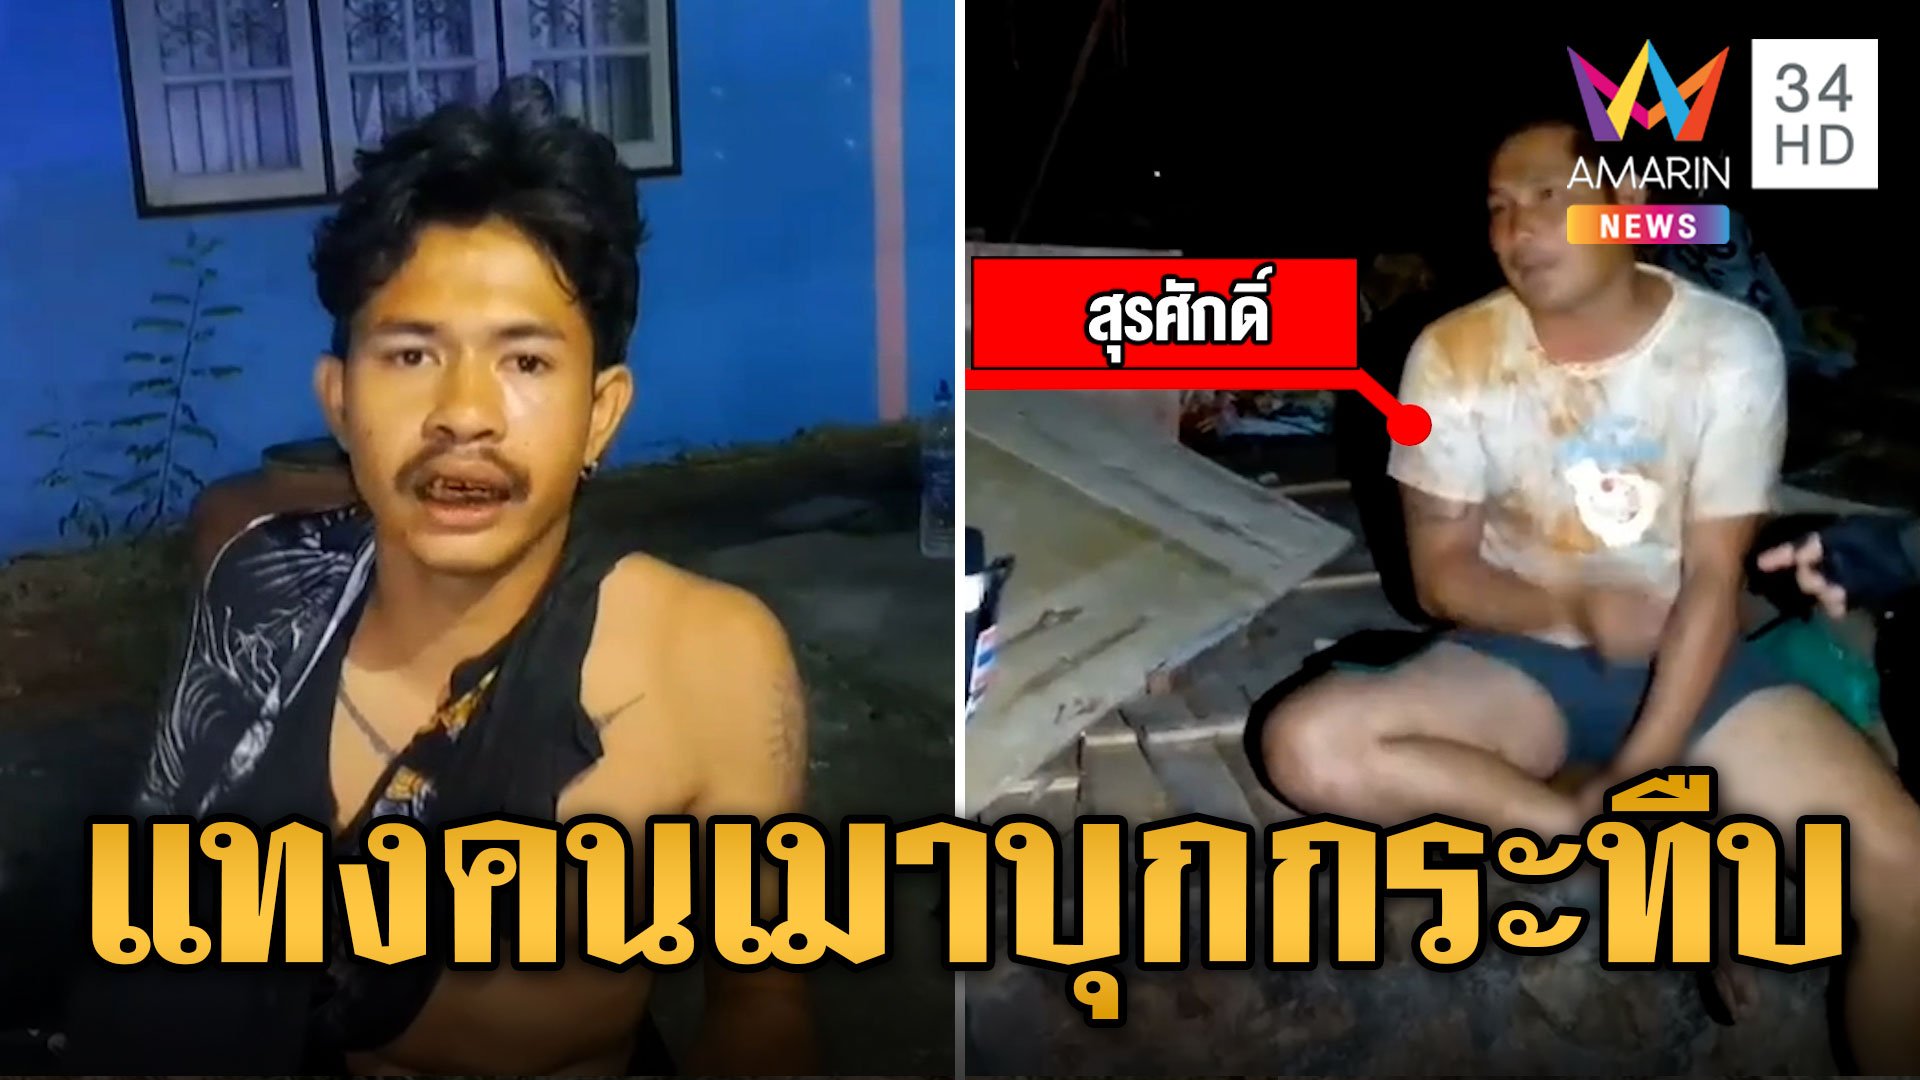 หนุ่มเอาอาละวาด กระทืบคนในบ้านเจอเขยแทงสวนเจ็บ | ข่าวเที่ยงอมรินทร์ | 4 มี.ค. 67 | AMARIN TVHD34